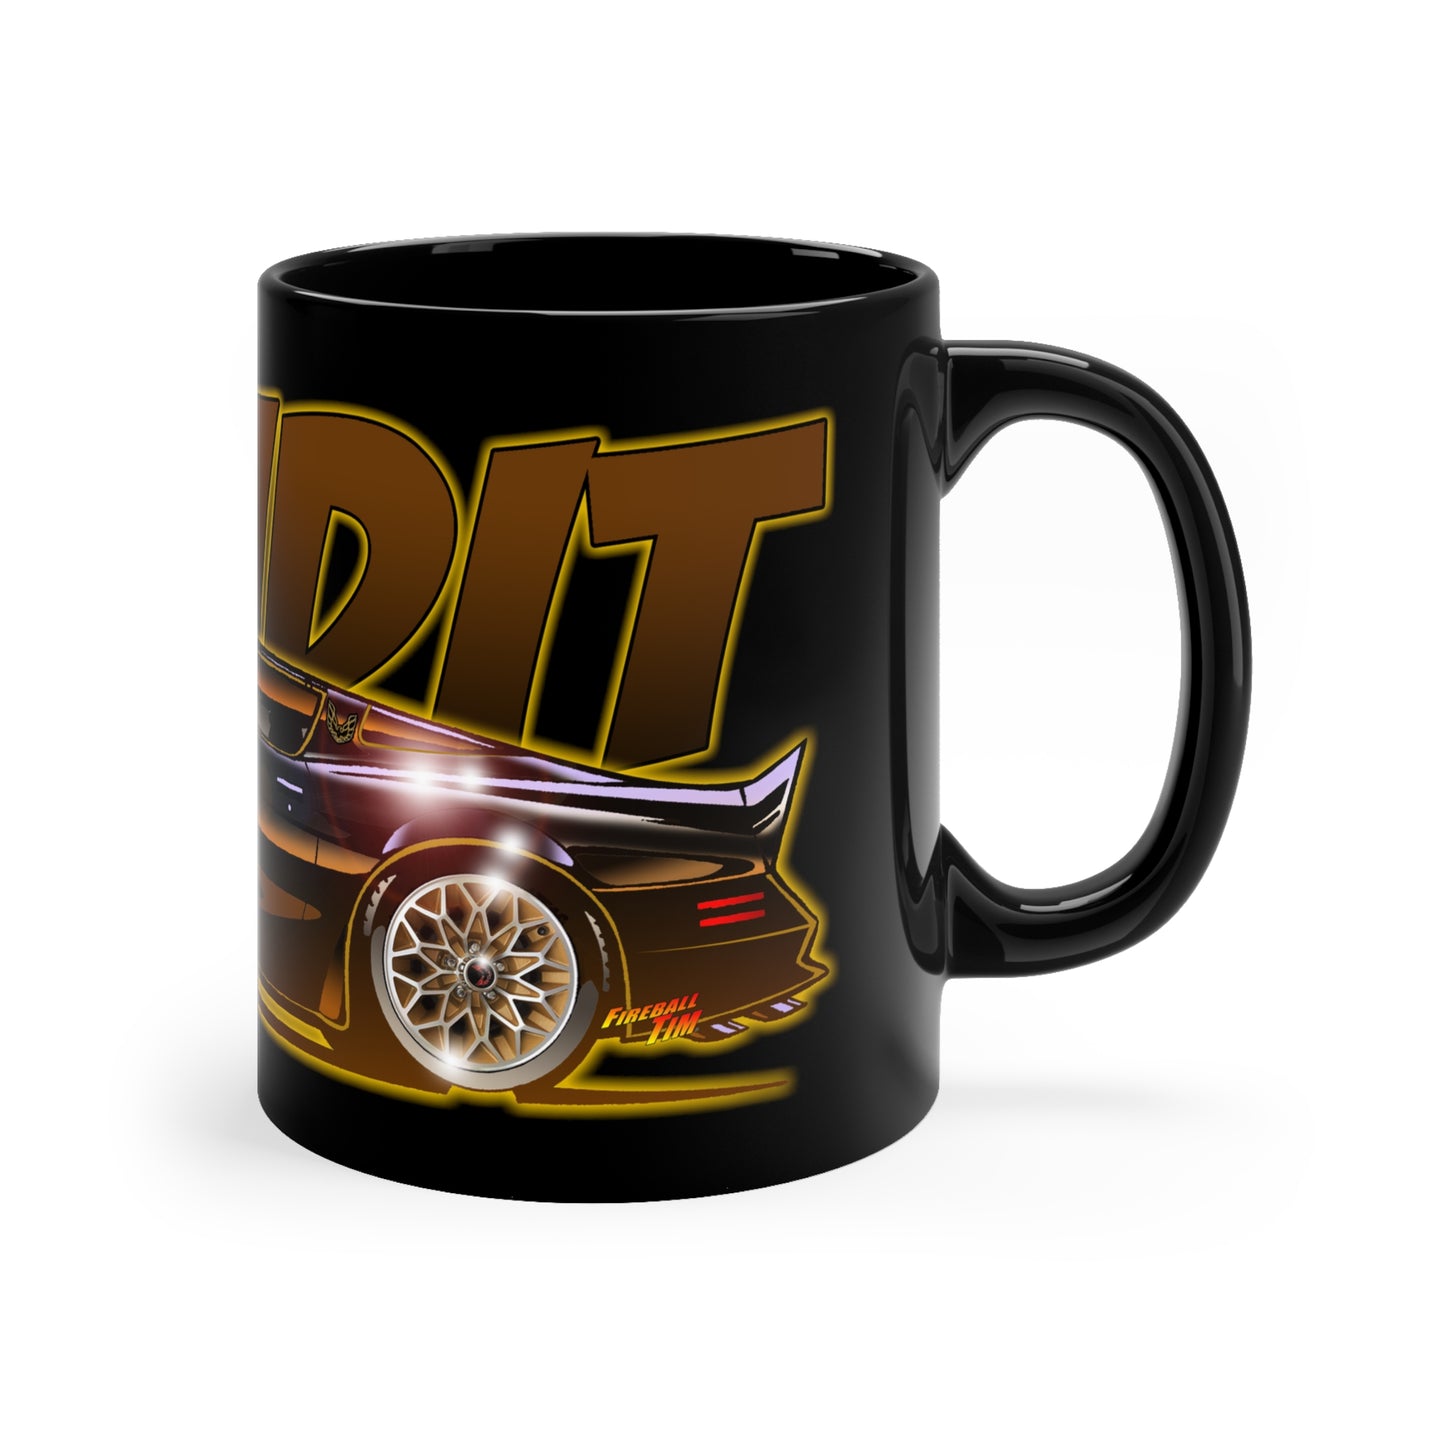 SMOKEY AND THE BANDIT Pontiac Trans Am Movie Car Coffee Mug 11oz